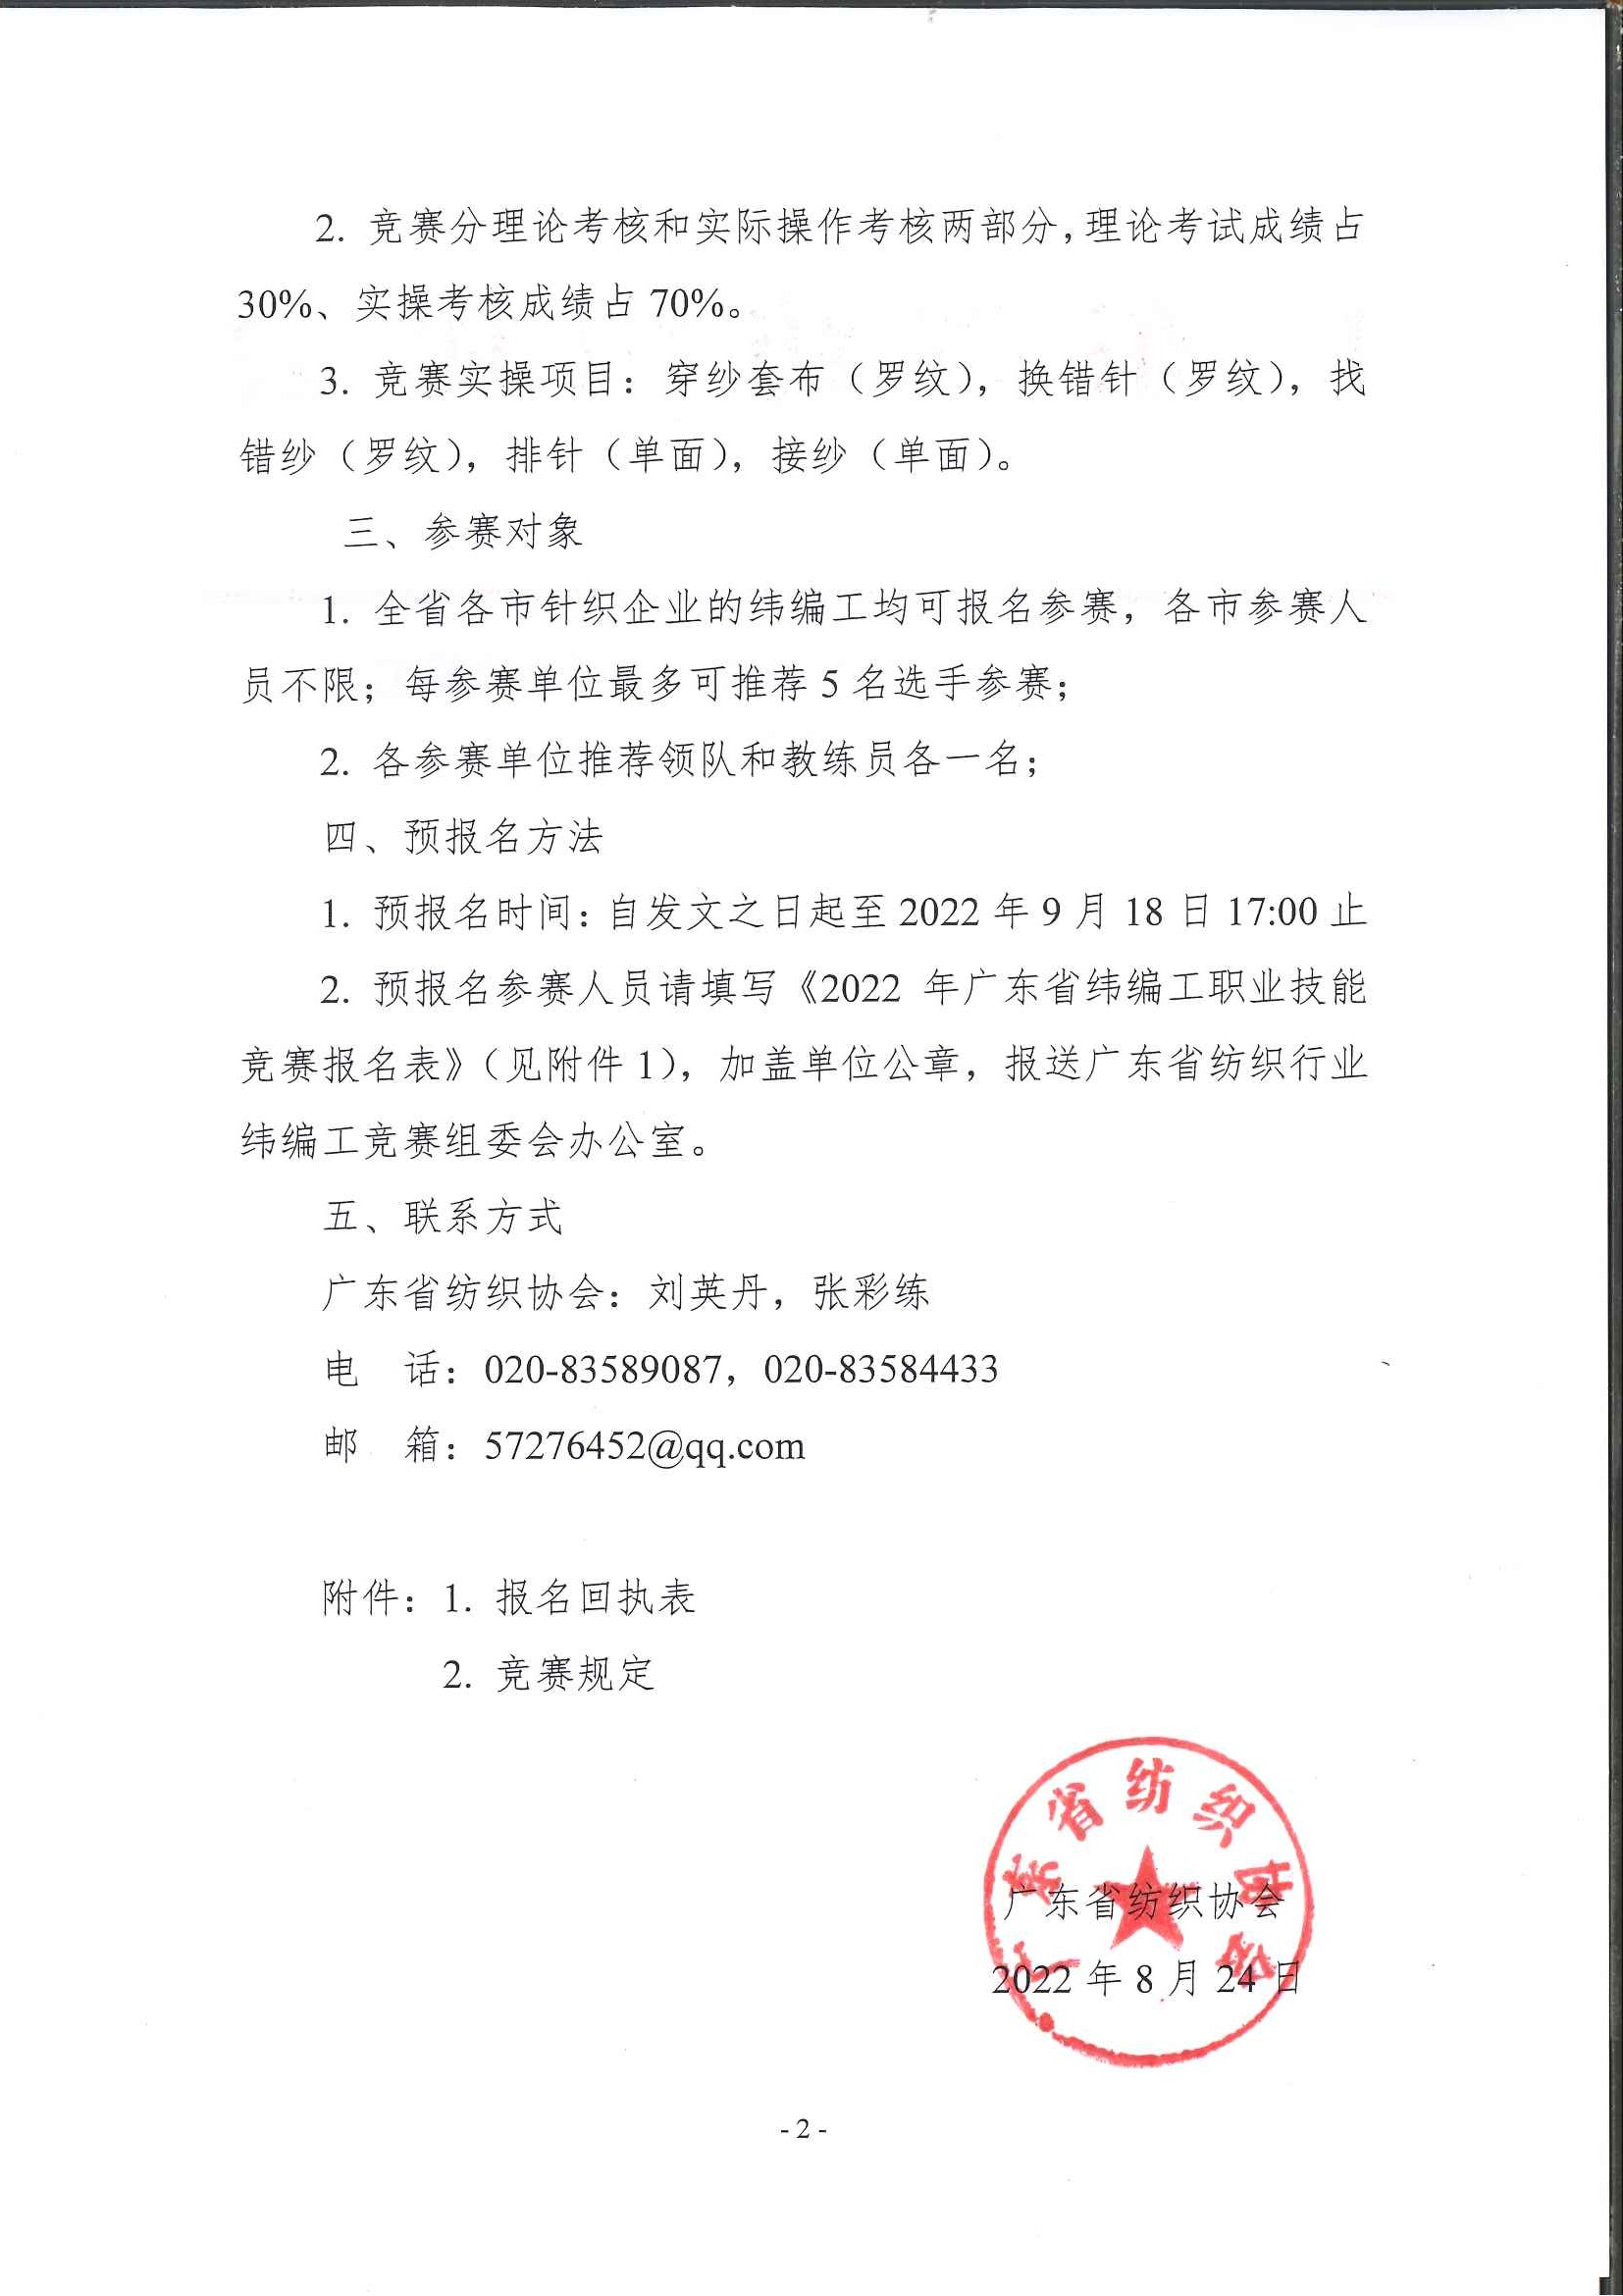 关于举办2022年广东省纺织行业纬编工职业技能竞赛的预通知_页面_2.jpg